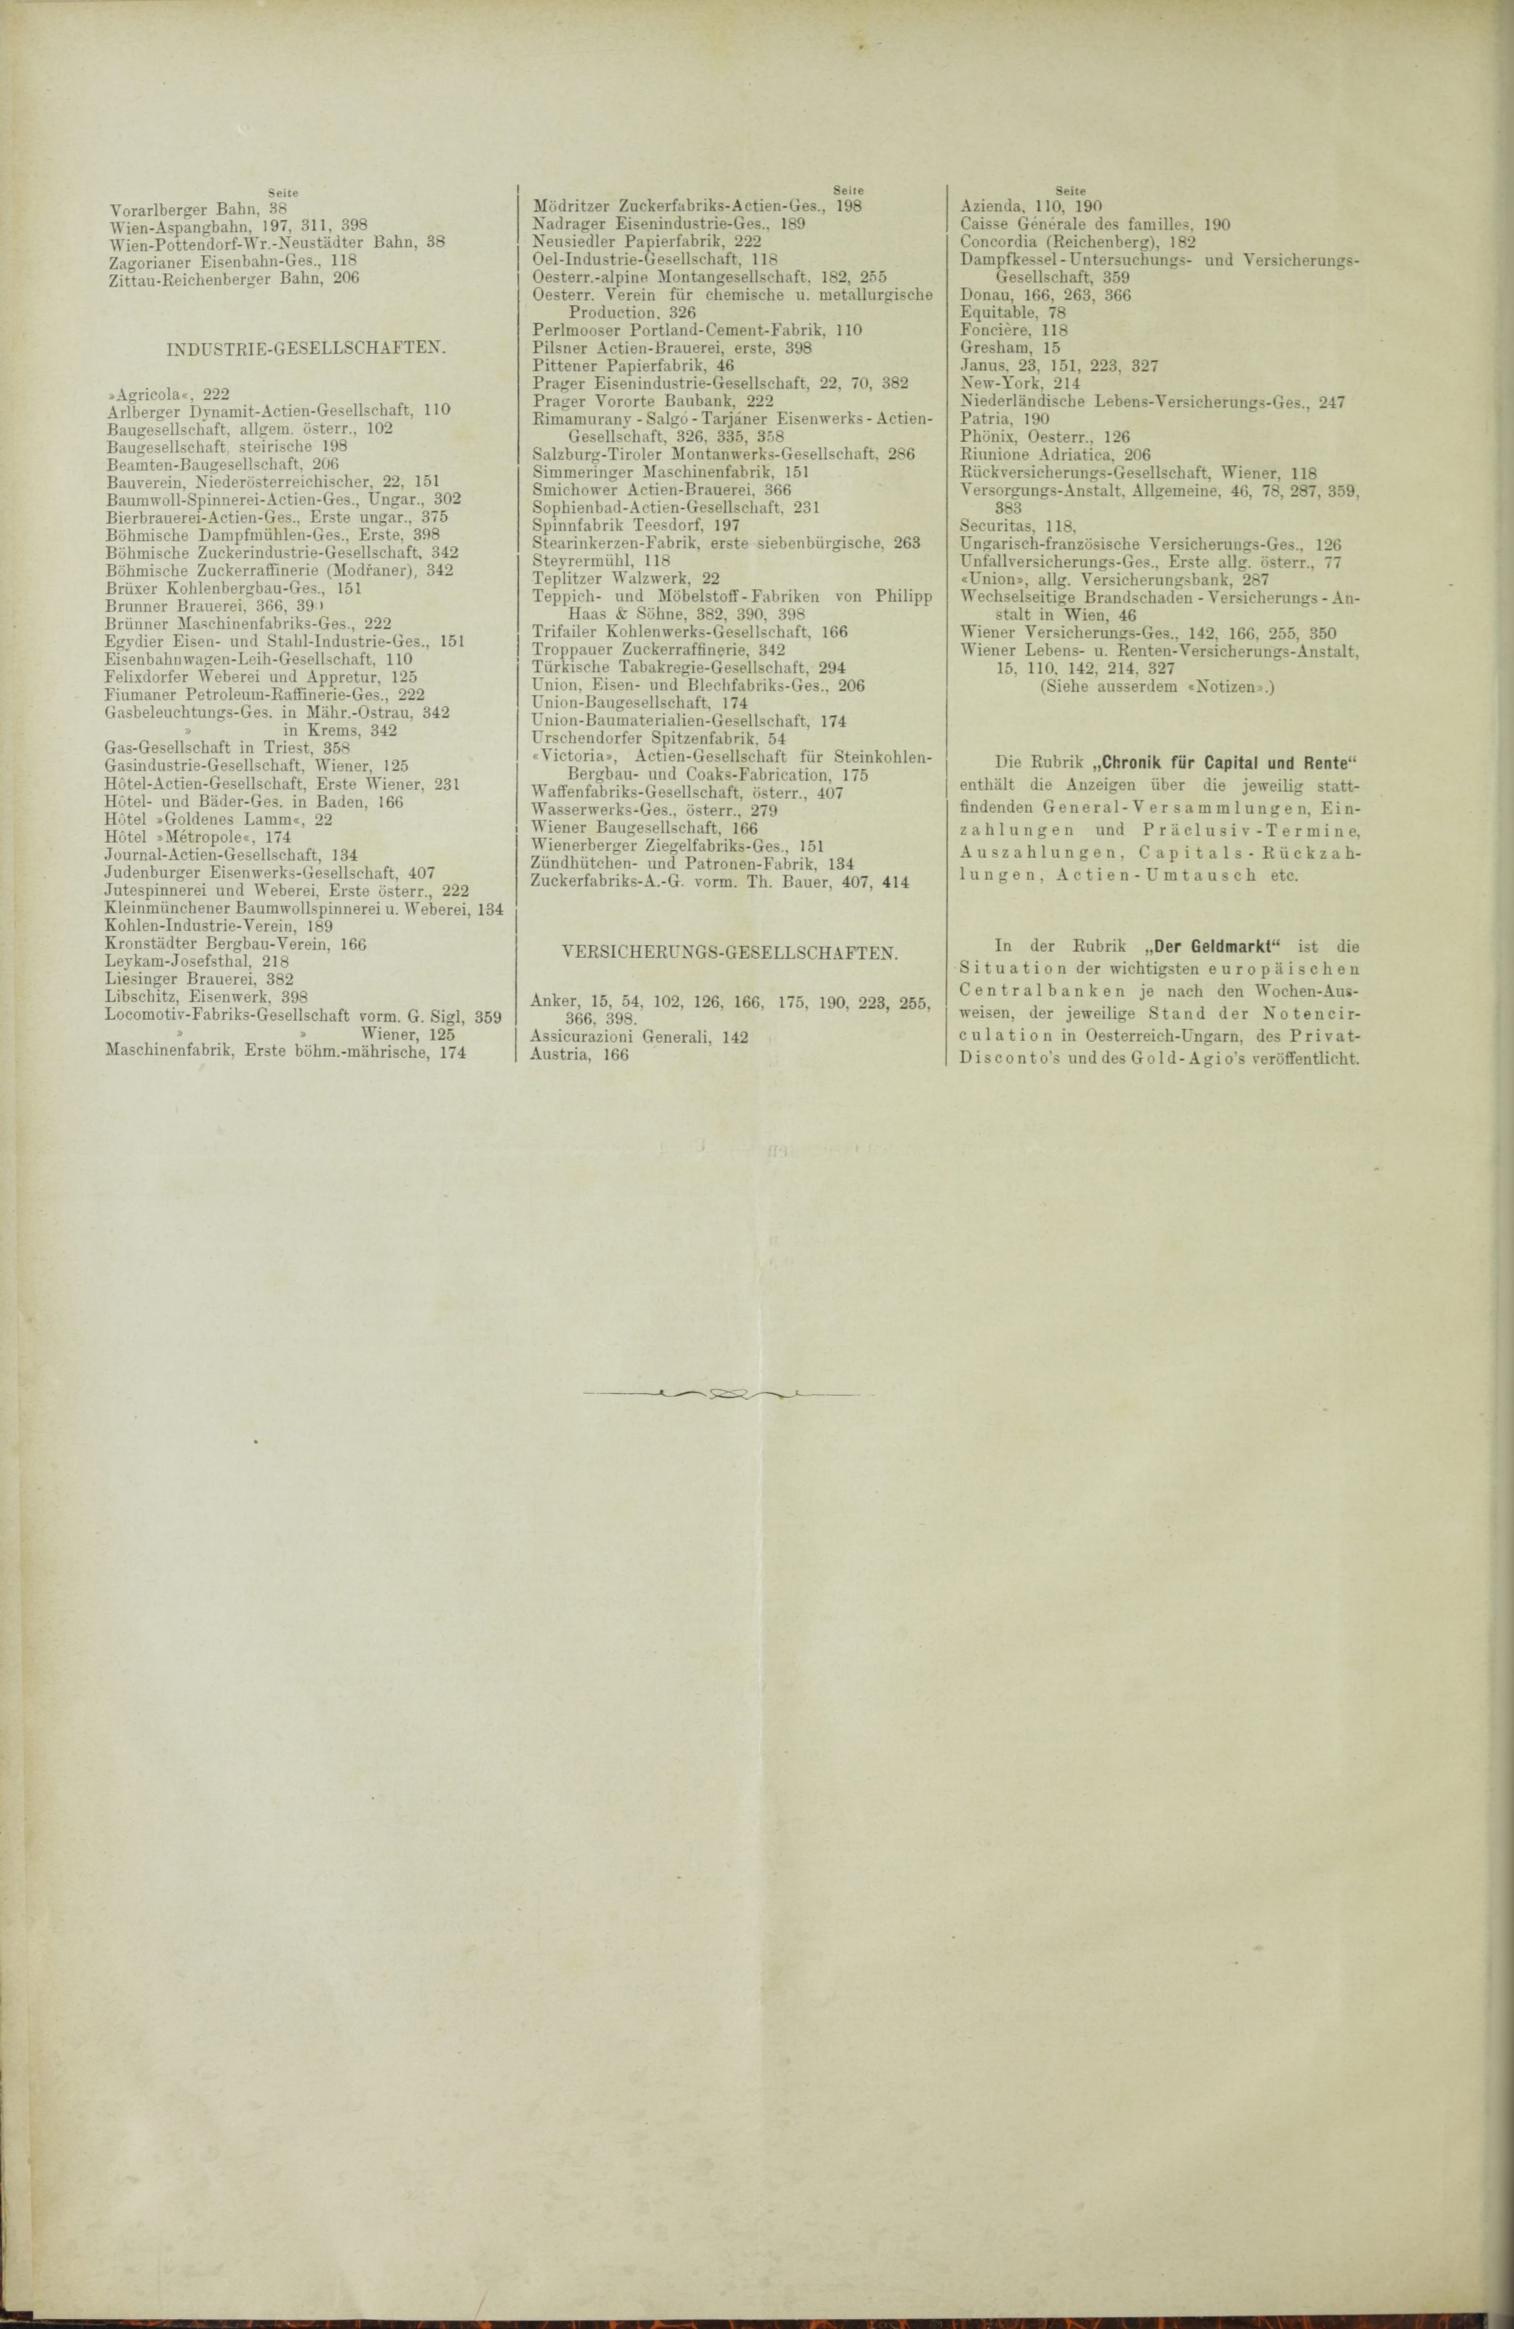 Der Tresor 05.08.1886 - Seite 12